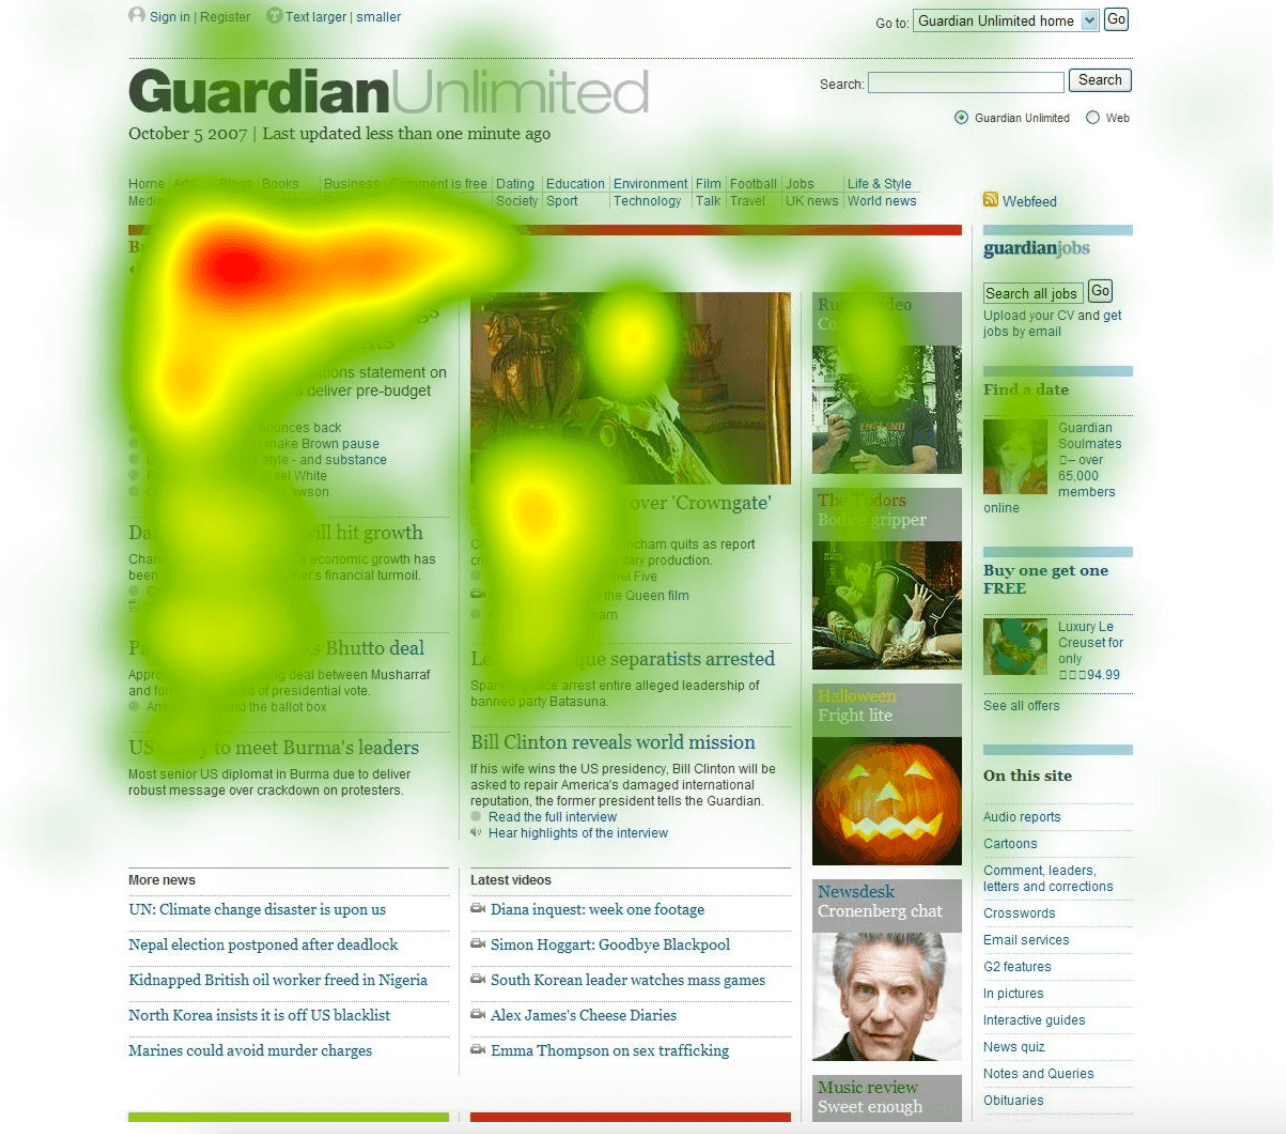 Makalenin başlangıcına yakın çoğu etkinliği gösteren Guardian ısı haritasının ekran görüntüsü